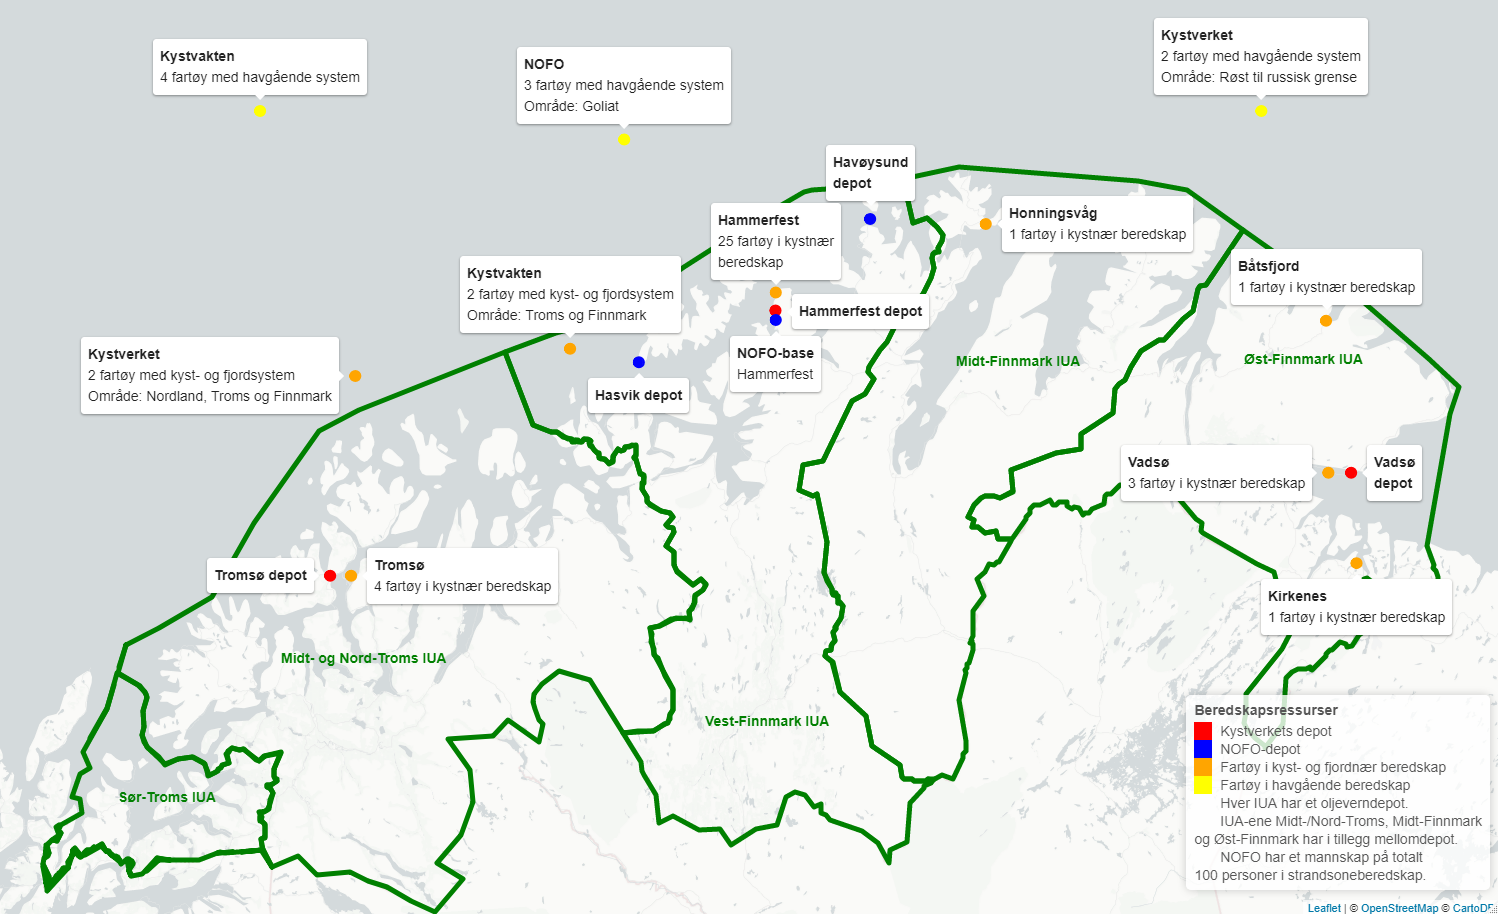 Kartet viser plasseringen av oljevernressurser i form av depoter, baser og fartøy. I Troms det ett depot i Tromsø og fire fartøy i kystnær beredskap. I Vest-Finnmark er det depoter i Hasvik, Havøysund og Hammerfest, en NOFO-base i Hammerfest og 25 fartøy i kystnær beredskap. I Midt-Finnmark er der ett depot i Honningsvåg. I Øst-Finnmark er det depoter i Båtsfjord, Kirkenes og Vadsø og til sammen fem fartøy i kystnær beredskap. IUA-ene i Troms og Finnmark har i tillegg mellomdepot. Kystverket har videre to fartøy med oljevernutstyr for kyst- og fjord som dekker området Nordland, Troms og Finnmark. Kystvakten har to fartøy med kyst- og fjordsystem som dekker området Troms og Finnmark. NOFO har et mannskap på totalt 100 personer i strandsoneberedskap. Kystverket har to fartøy med havgående oljevernsystem som dekker området Røst til grensen mot Russland. Kystvakten har fire fartøy med havgående system. NOFO har tre fartøy med havgående system i området rundt Goliat. 